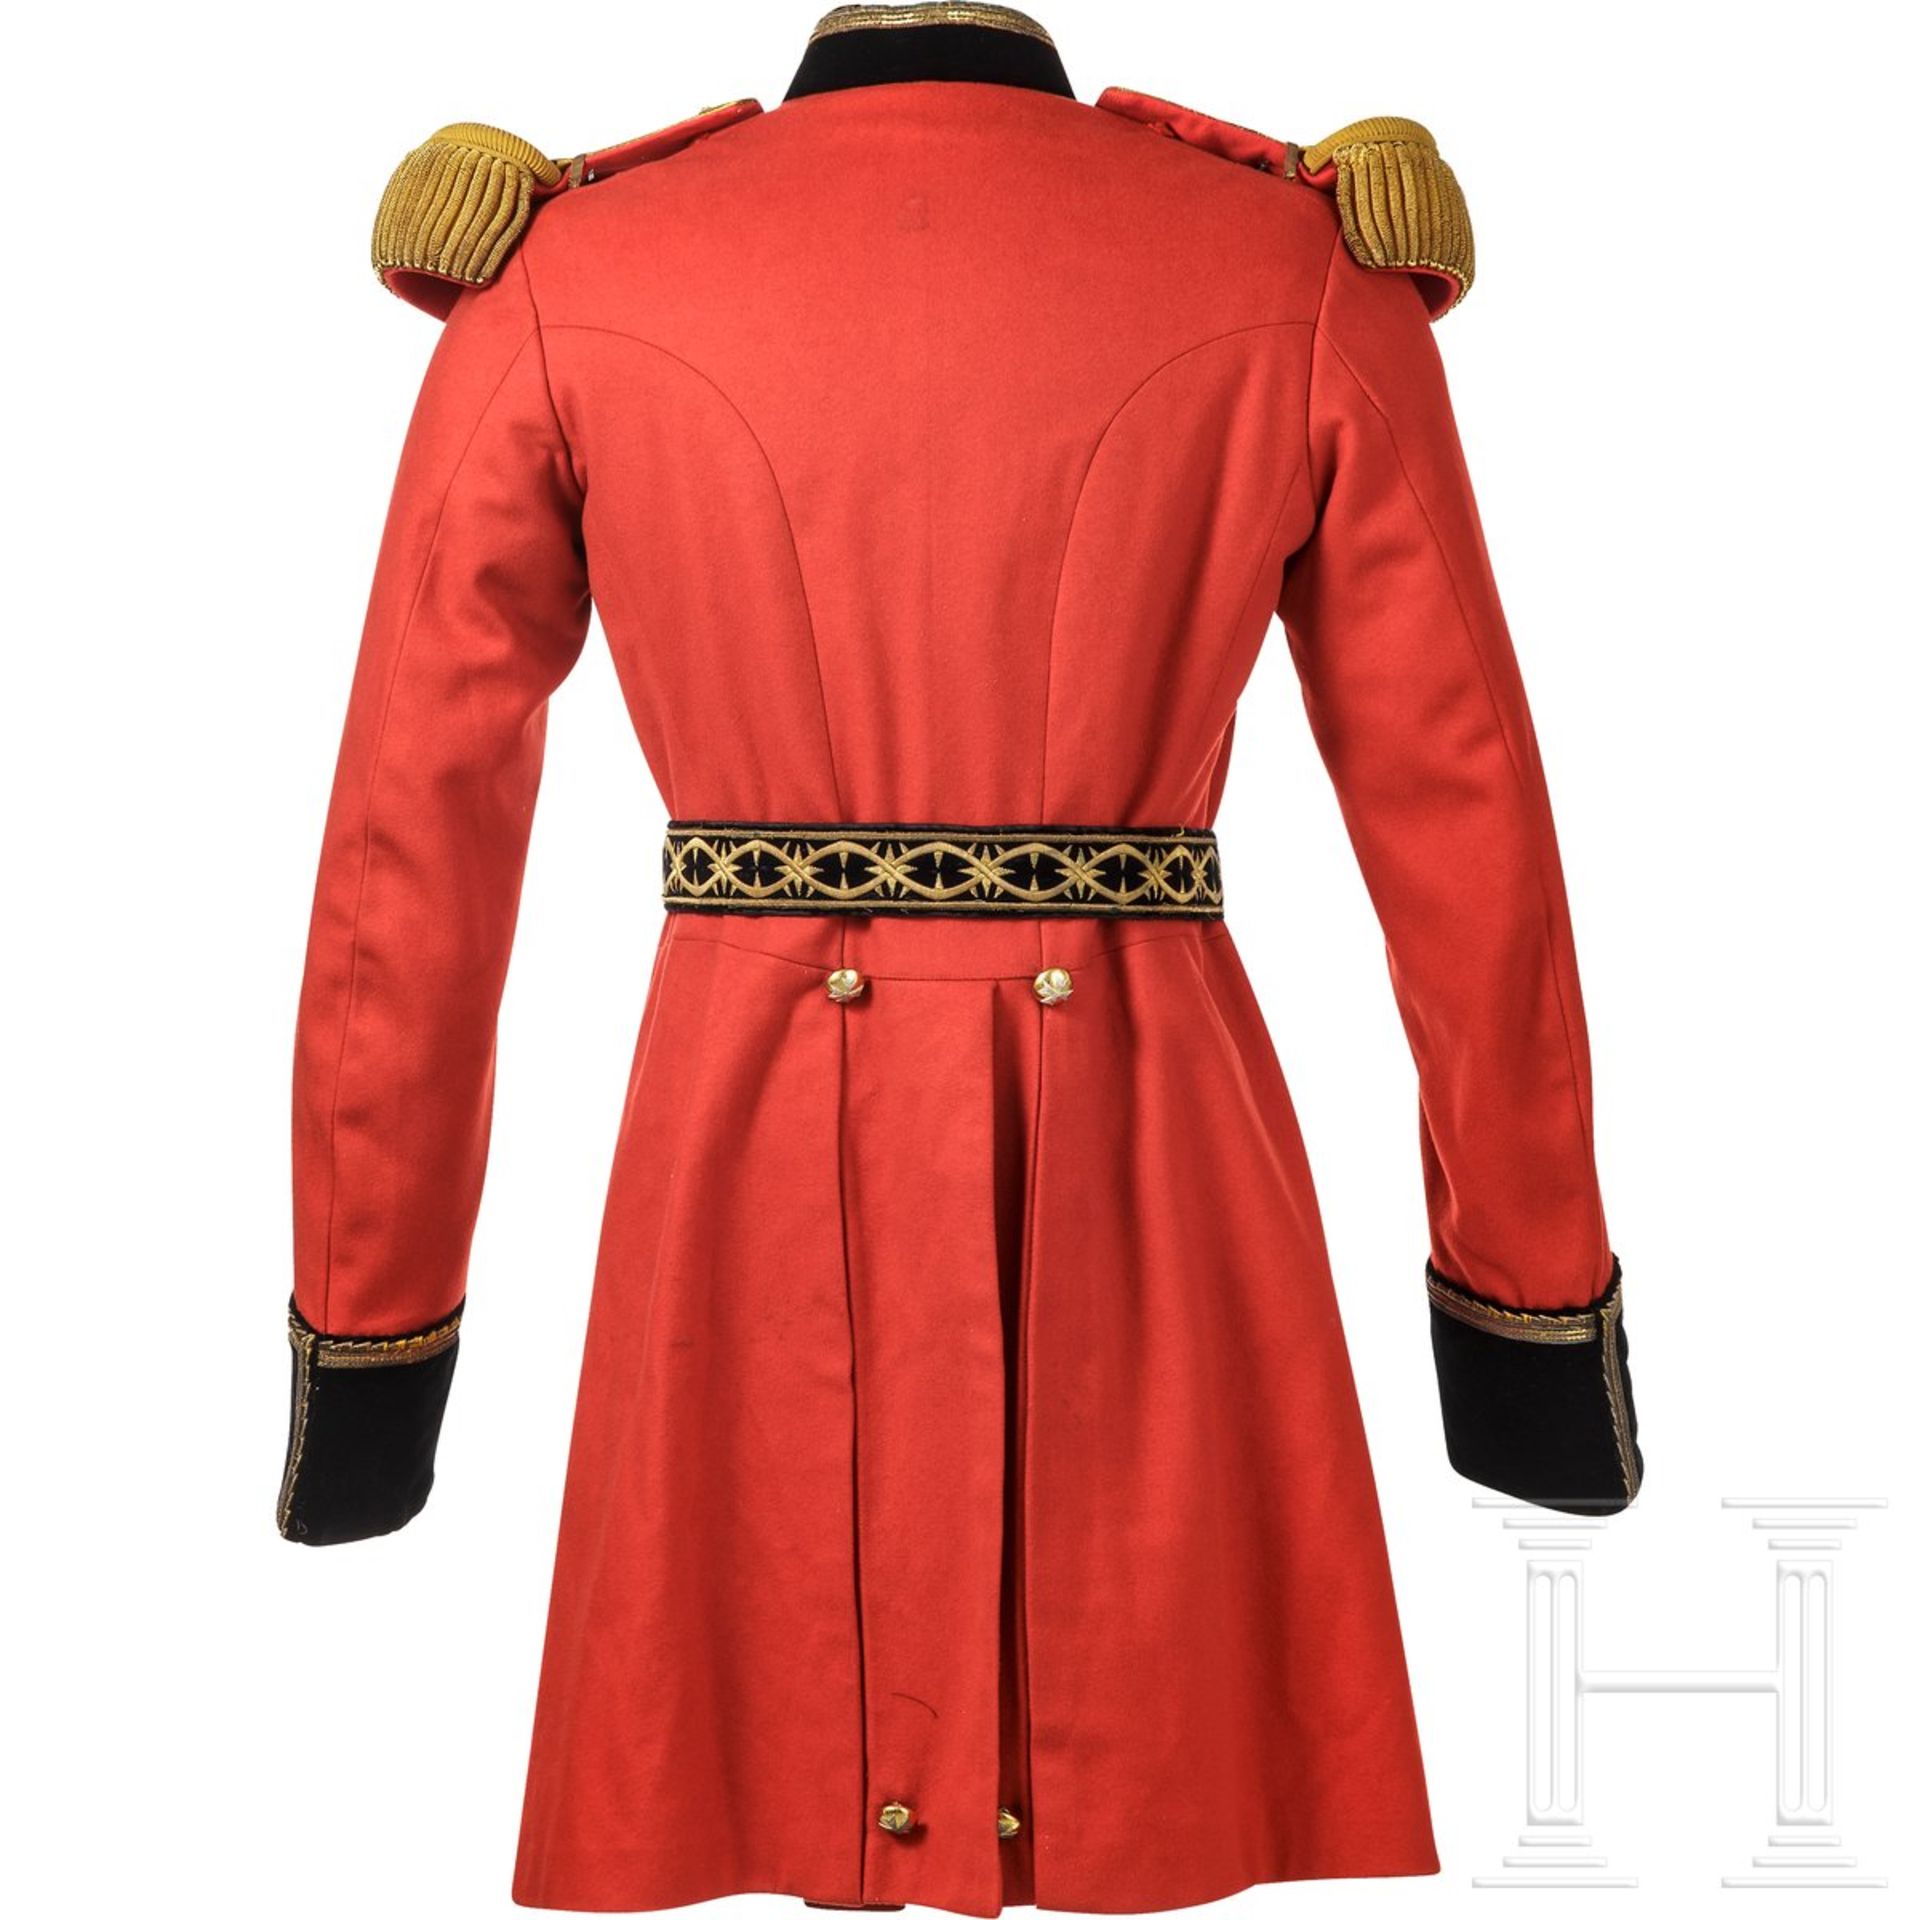 Uniformensemble eines Angehörigen des Souveränen Malteserordens, 20. Jhdt. - Bild 5 aus 5